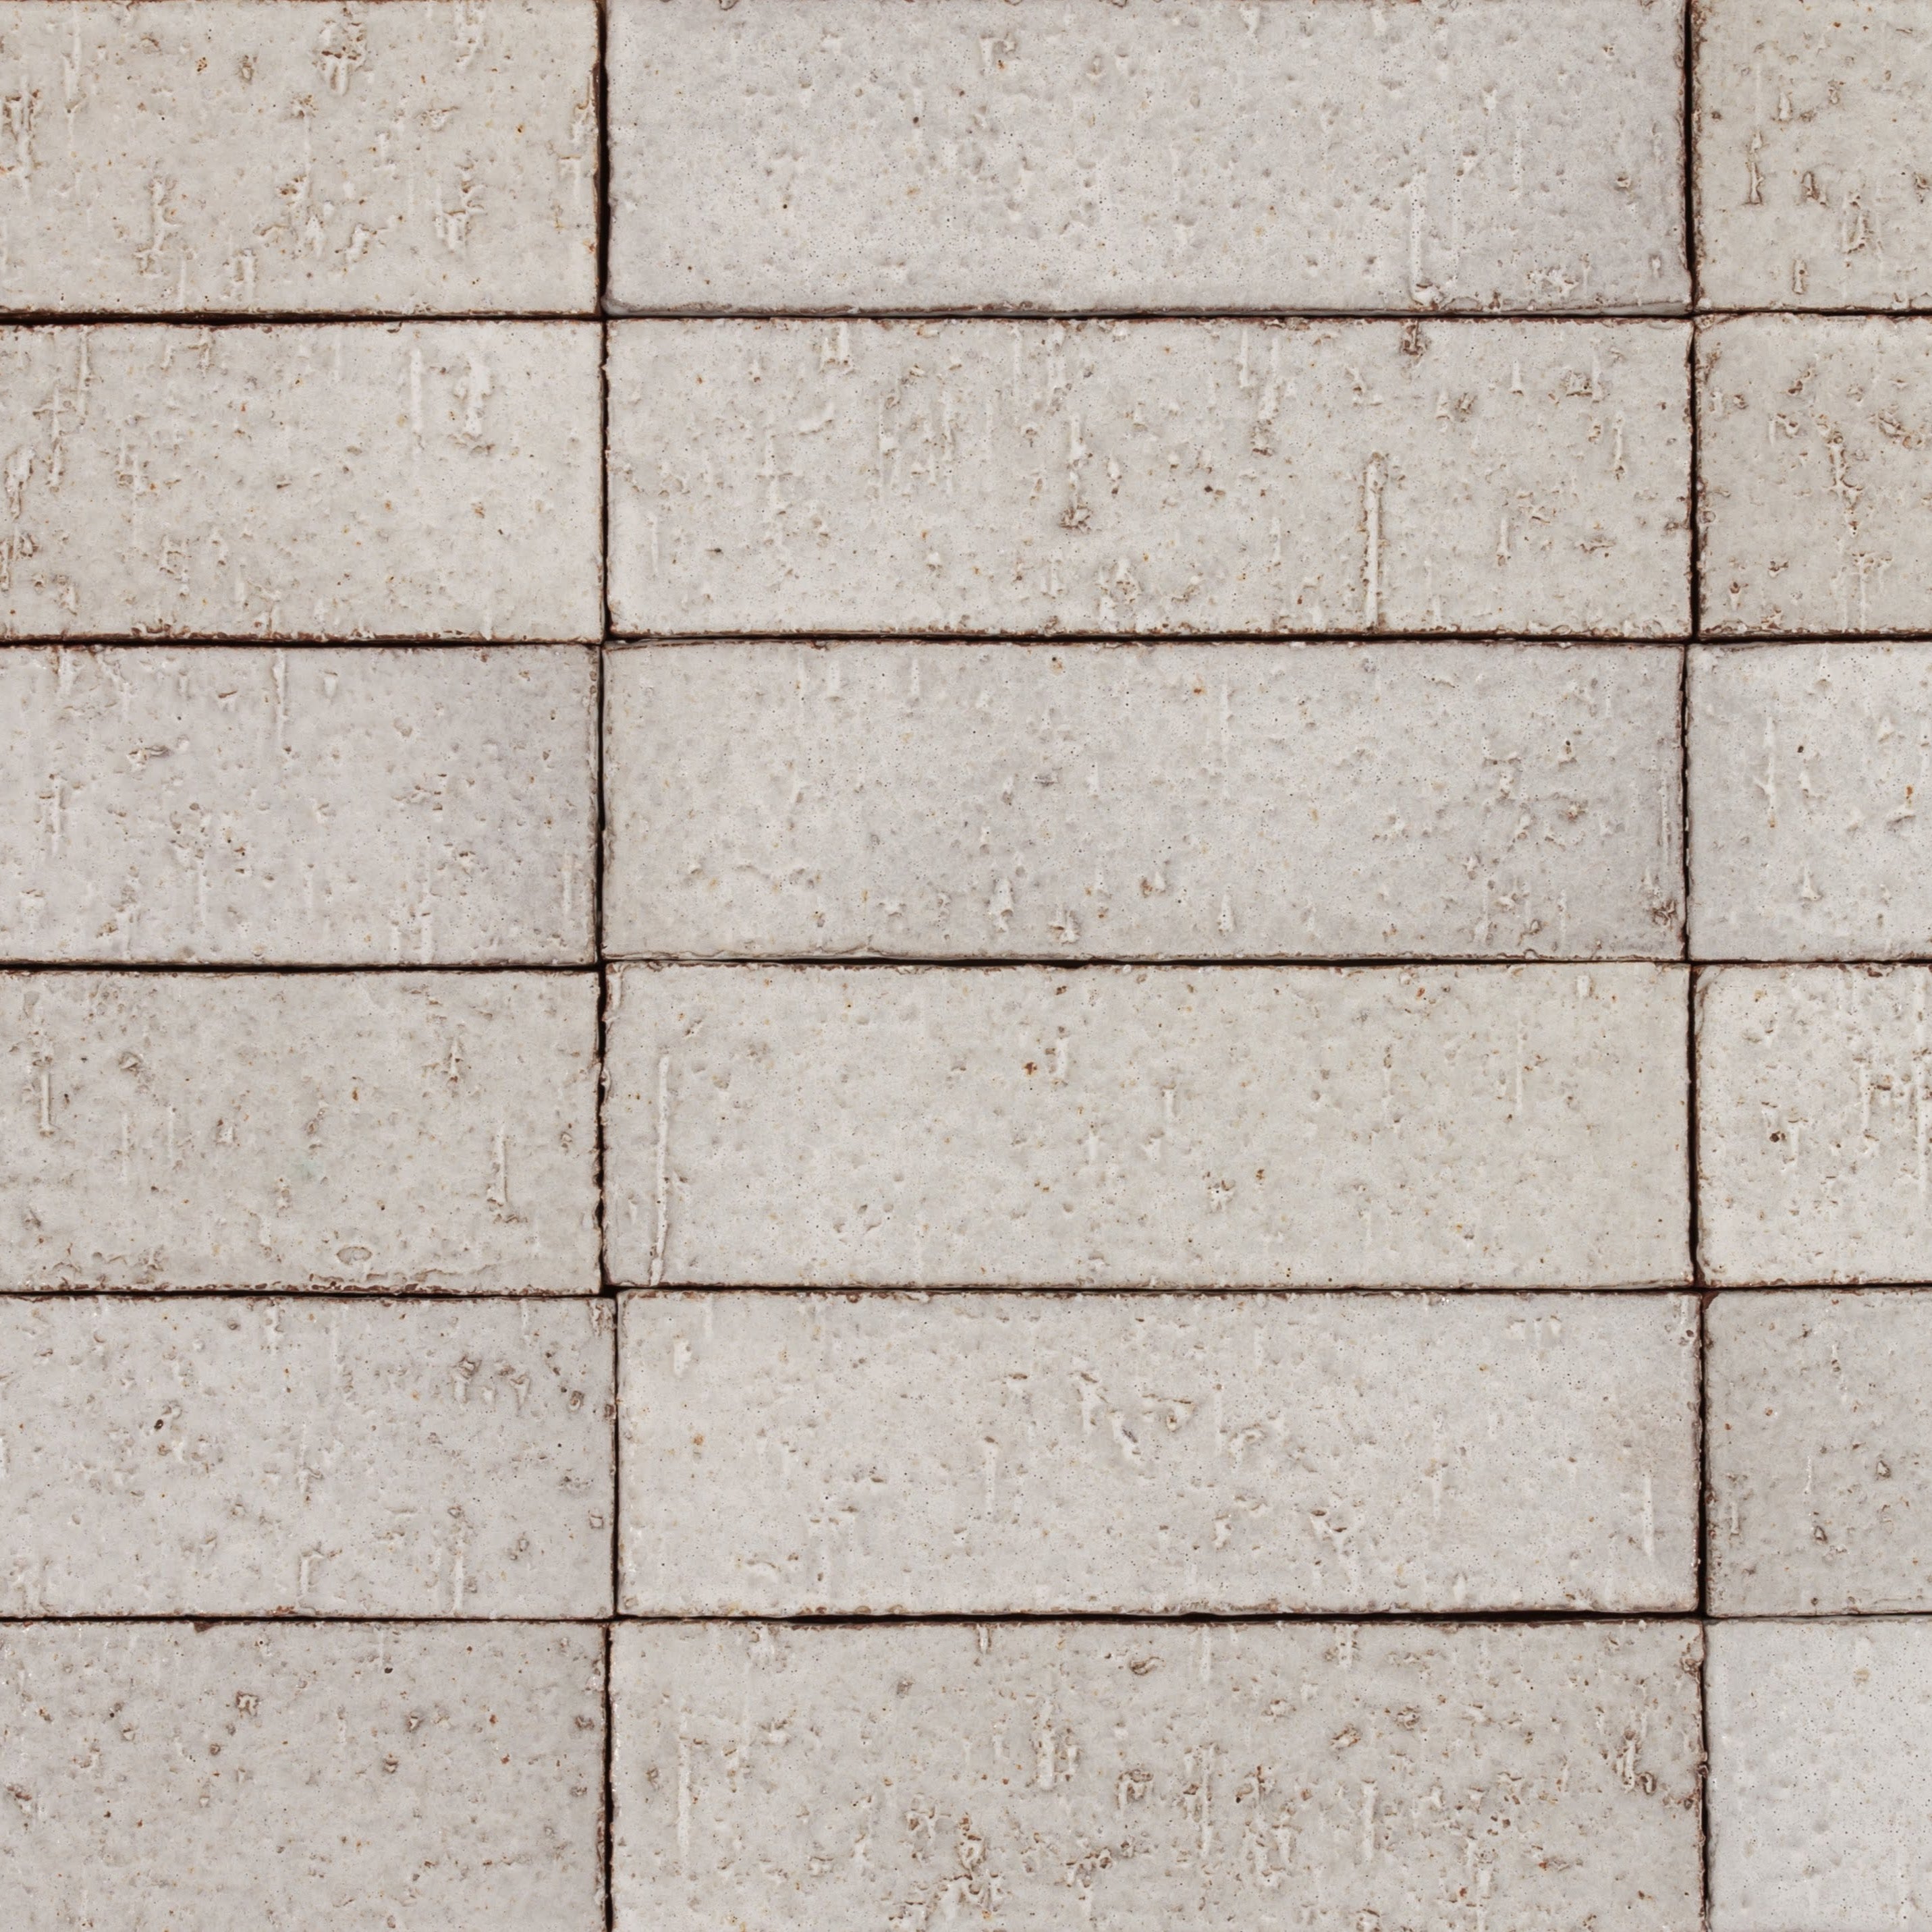 Arto Glazed Brick: Sierra Snow  (Flat 2¼"x7⅝"x⅝")